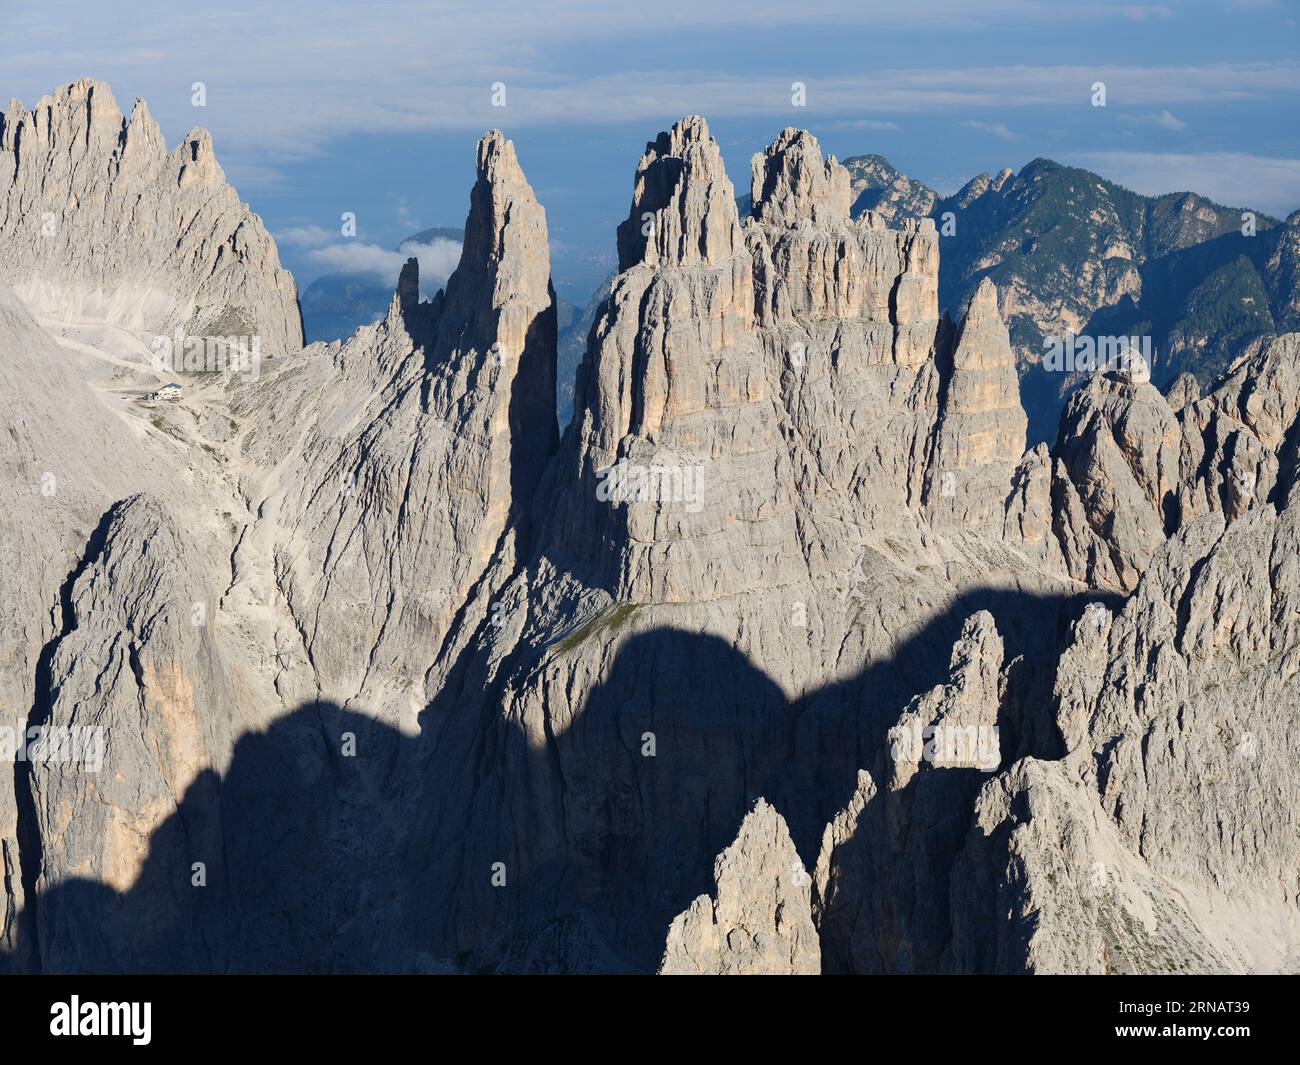 VUE AÉRIENNE. Les hautes tours Vajolet (altitude : 2821m) vues de l'est. Dans le massif de Catinaccio des Dolomites. Trentin-Haut-Adige, Italie. Banque D'Images